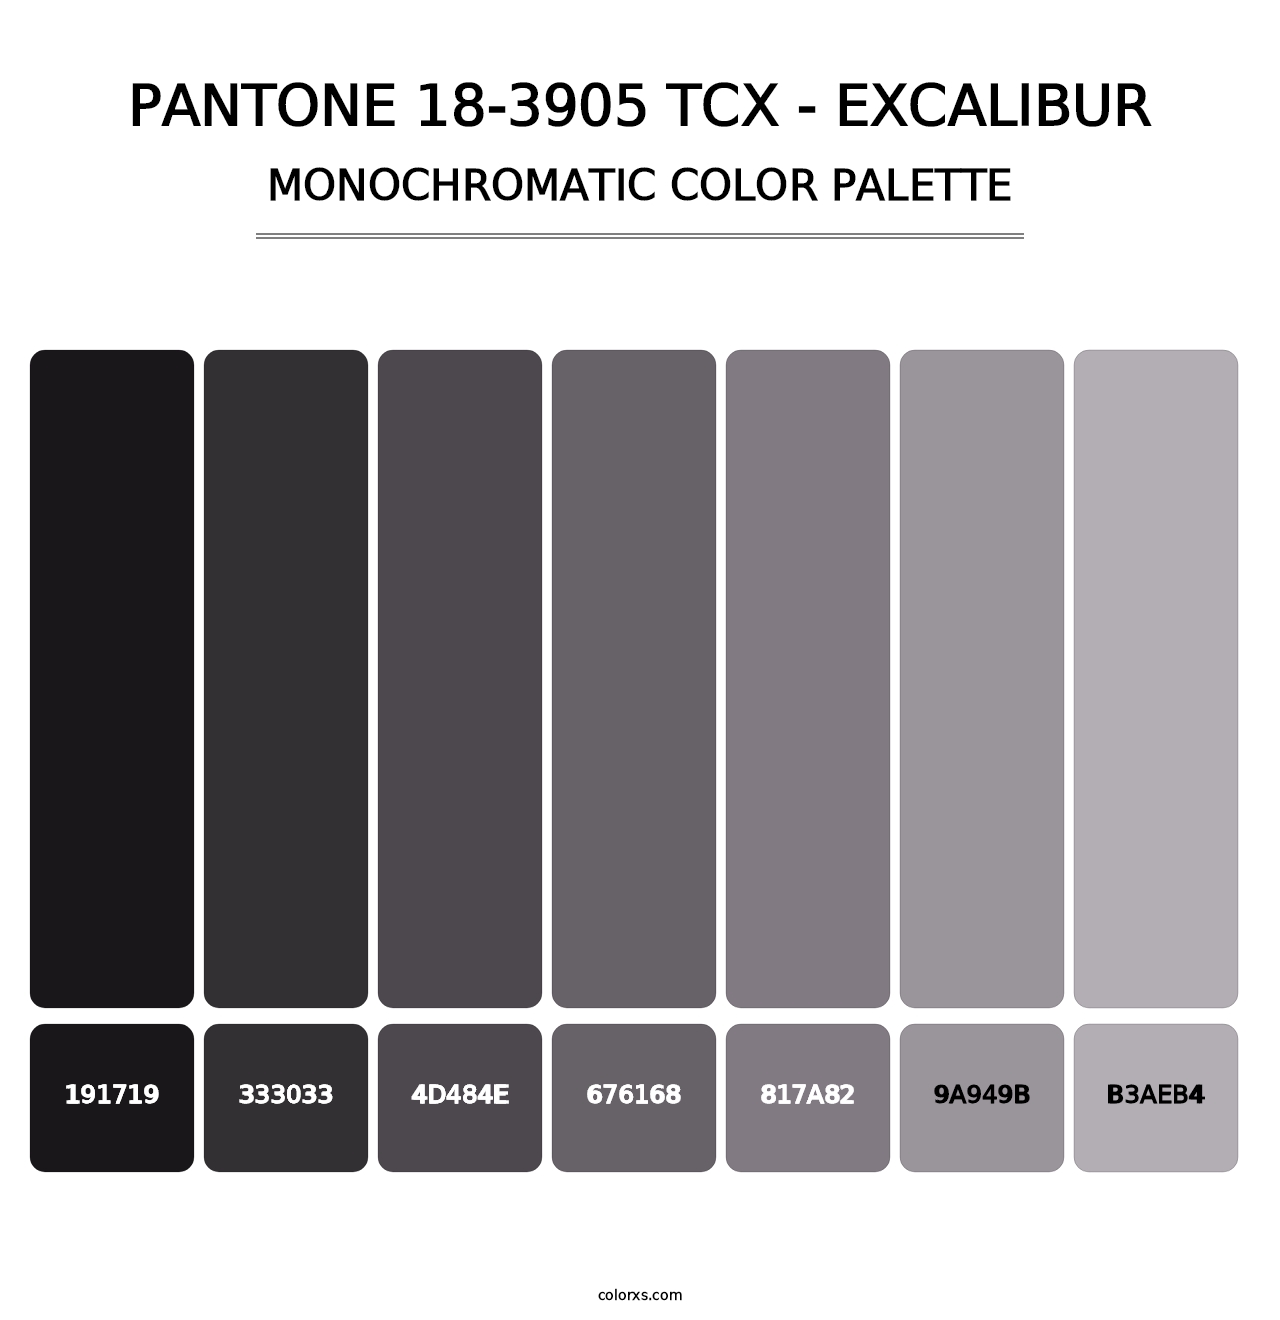 PANTONE 18-3905 TCX - Excalibur - Monochromatic Color Palette